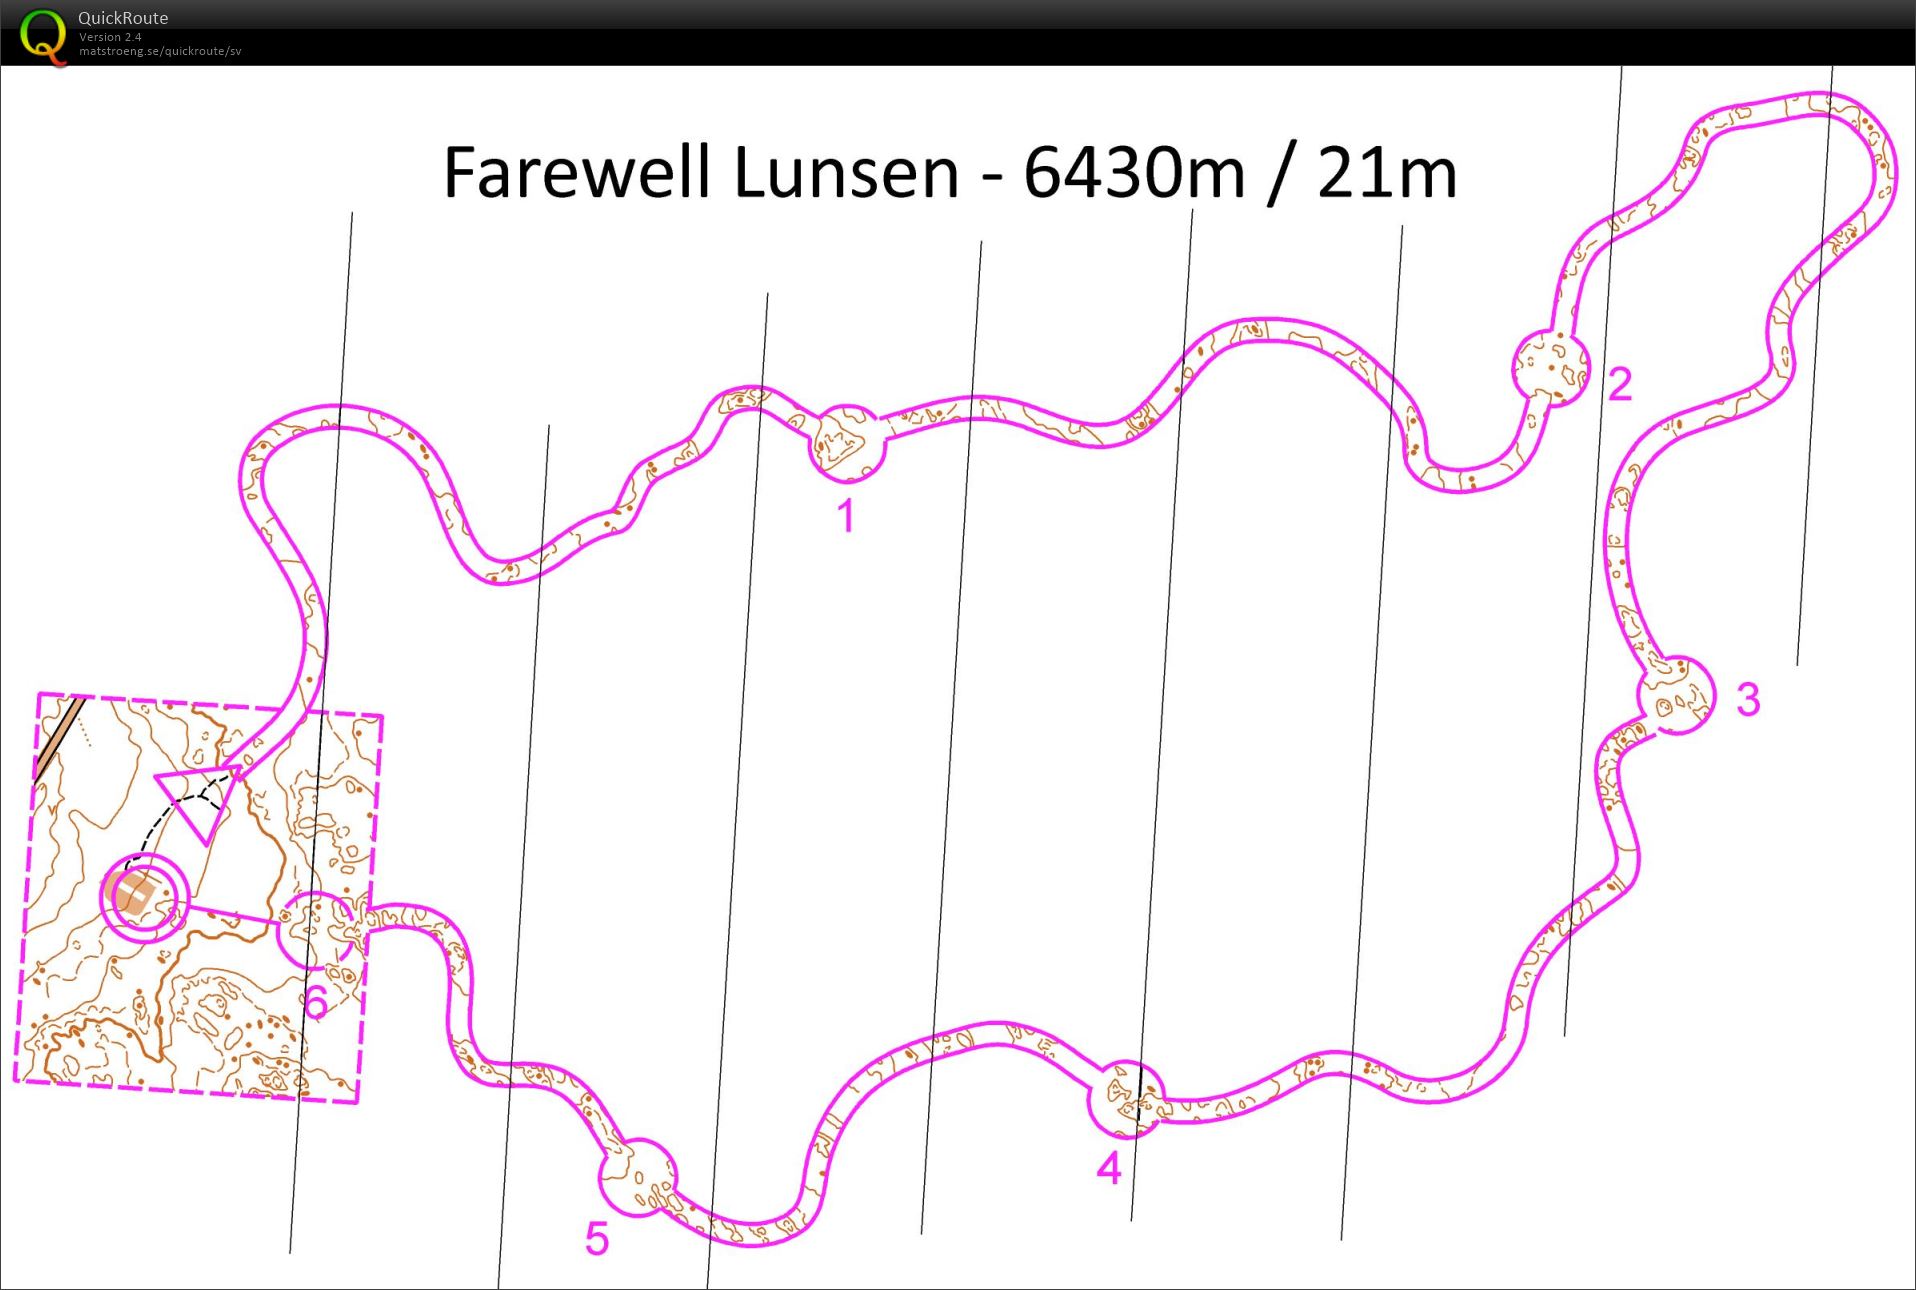 Farewell Lunsen (26.12.2015)